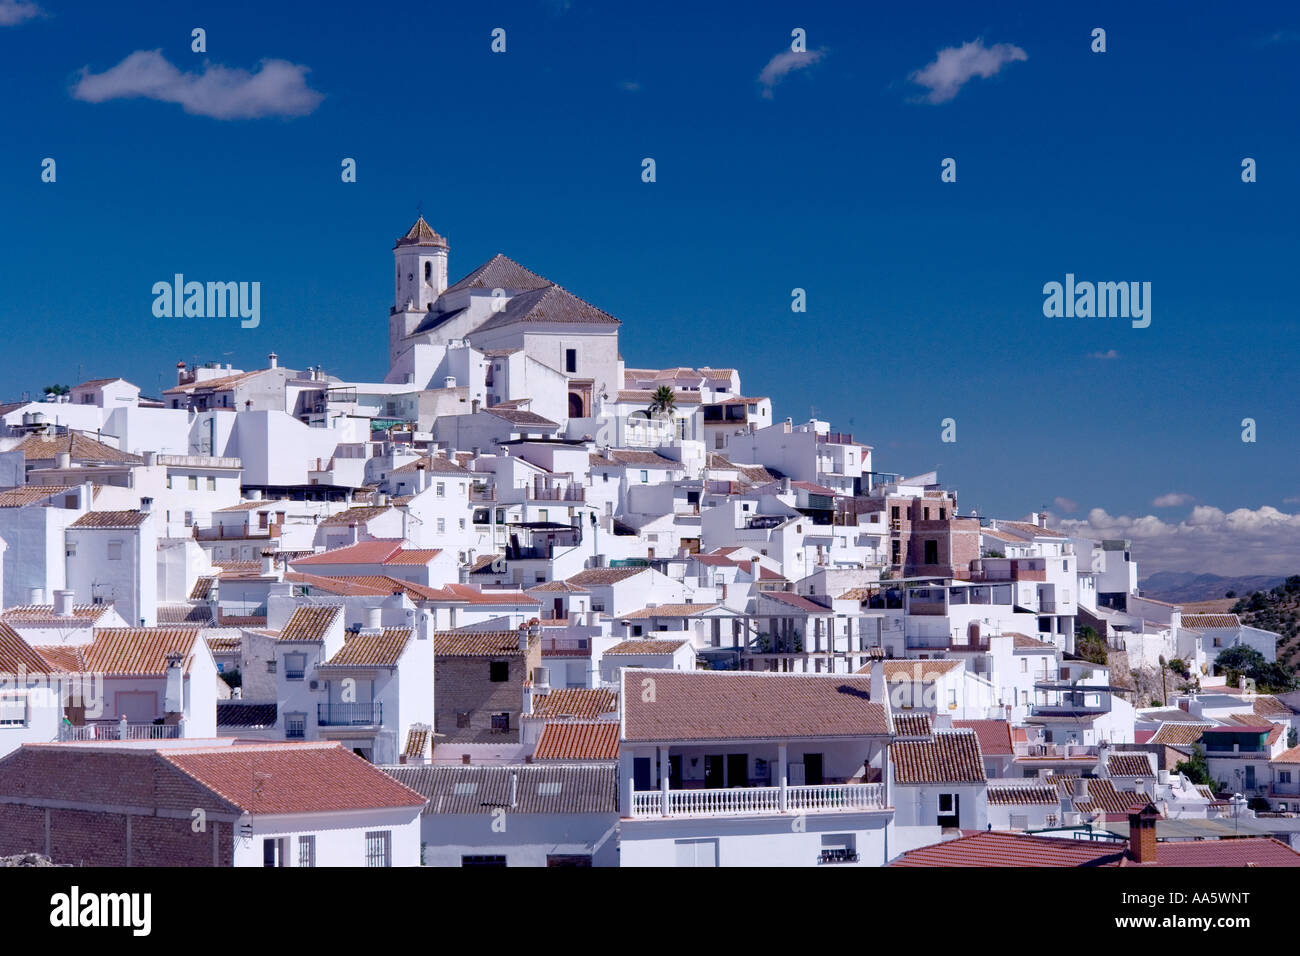 Alozaina village, Malaga Province Spain Stock Photo